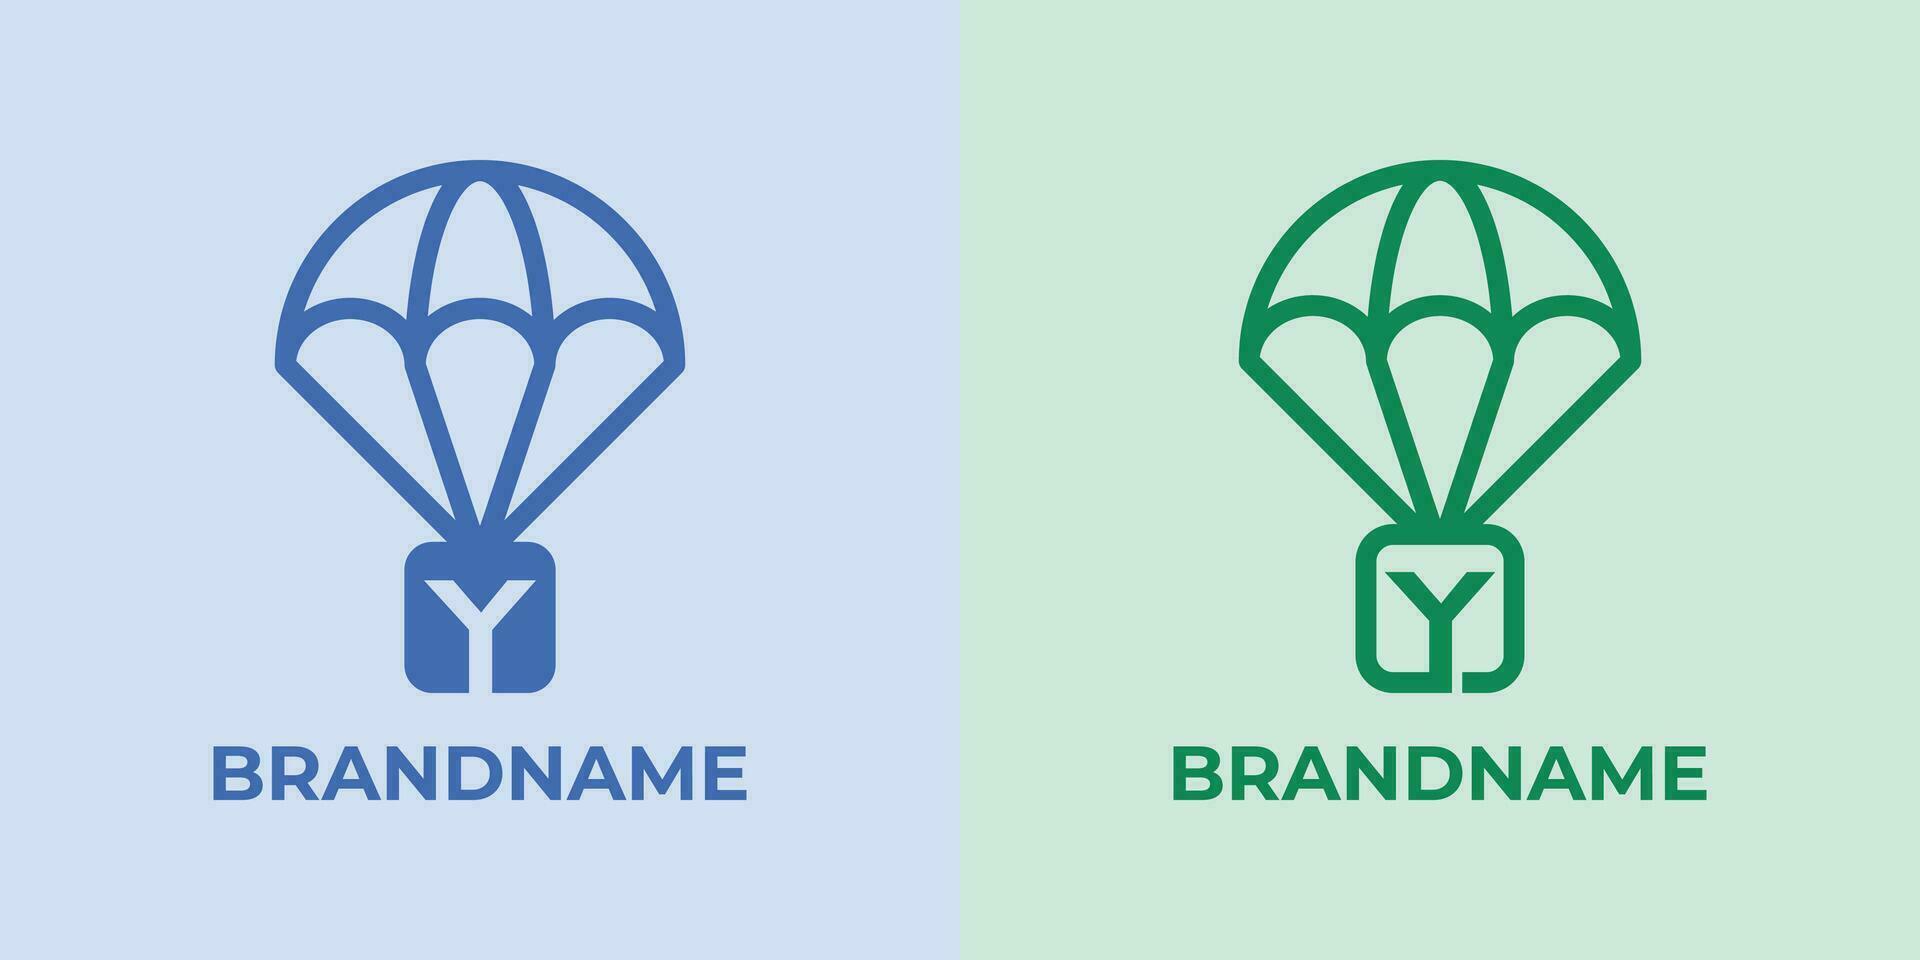 första y fallskärmsnedsläpp logotyp uppsättning, bra för företag relaterad till fallskärmsnedsläpp eller fallskärmar med y första vektor